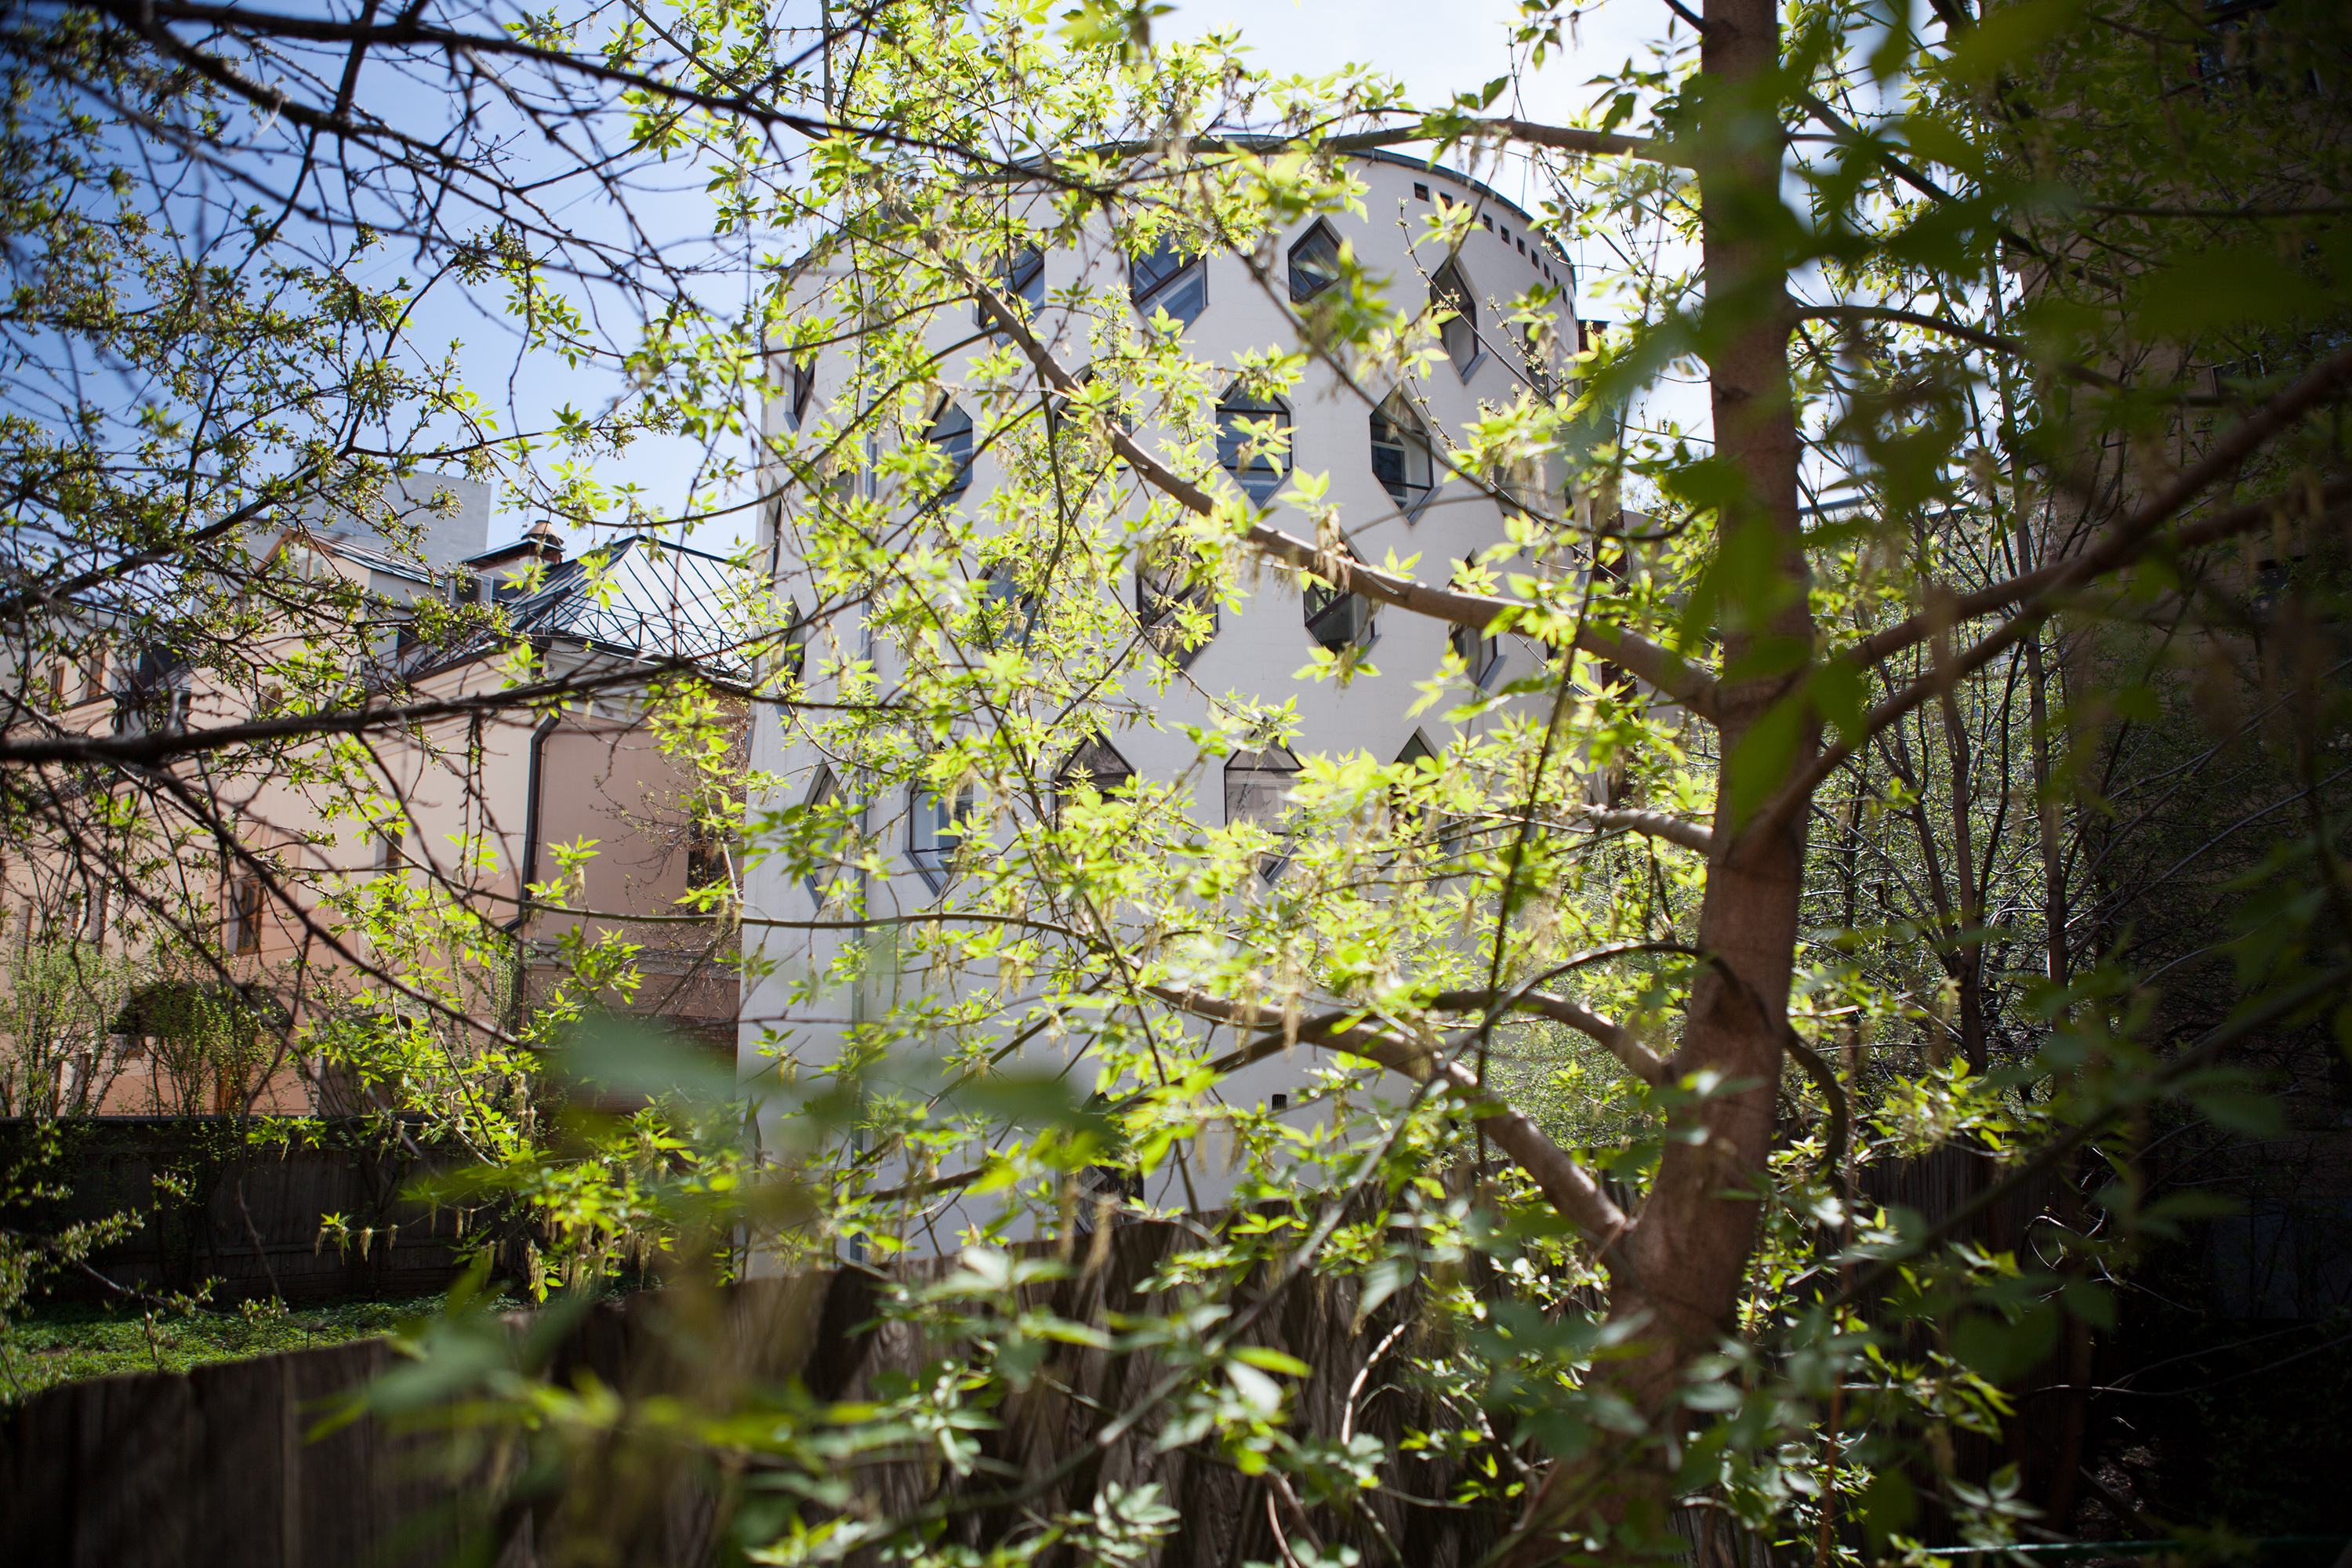 Melnikov House through the trees